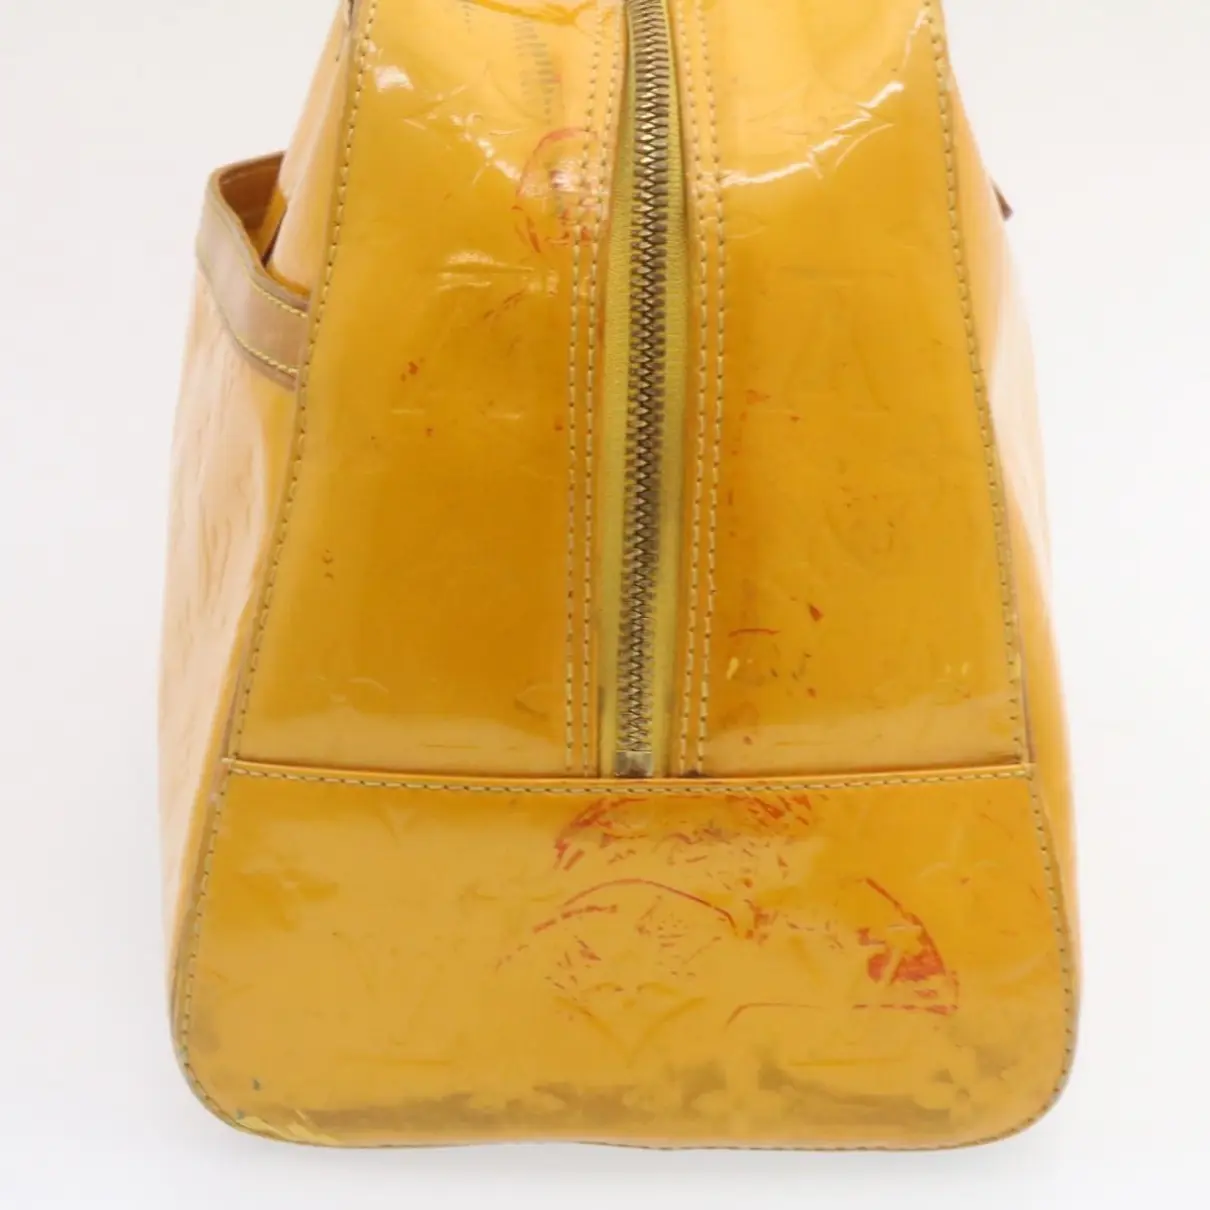 Tompkins Square patent leather handbag Louis Vuitton